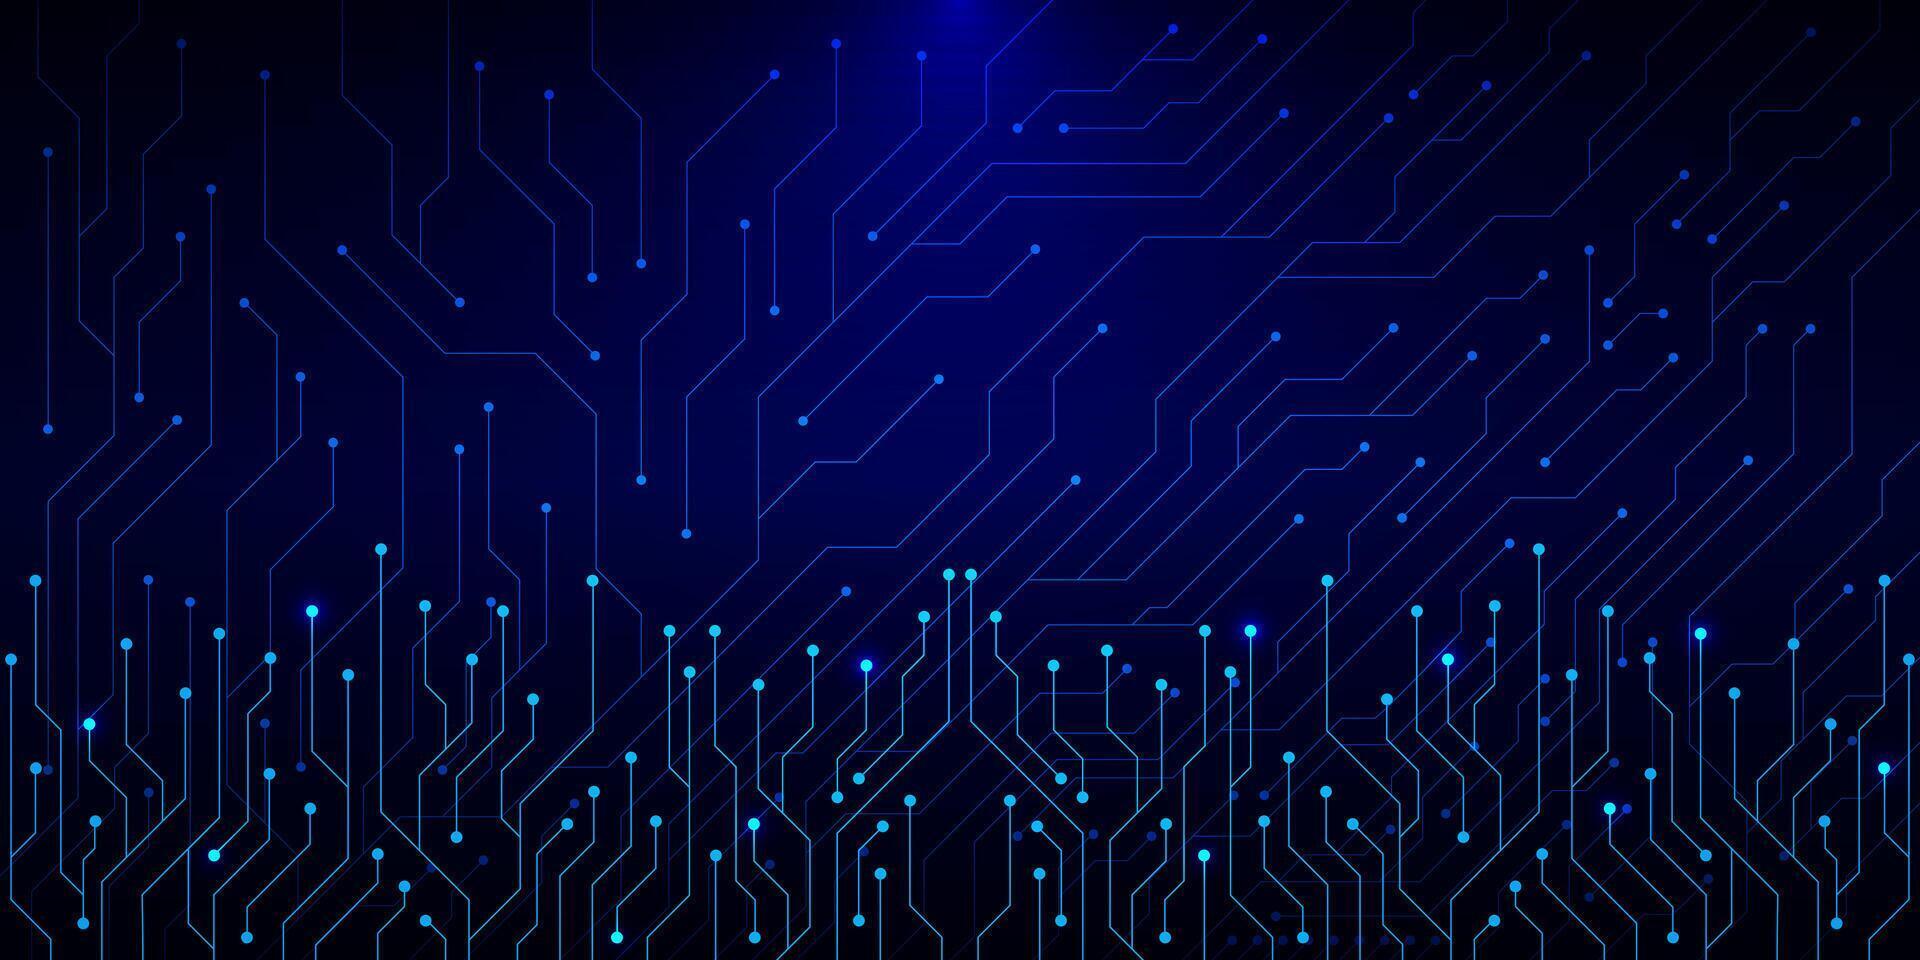 abstrakt elektronisk krets styrelse textur. hög dator och digital teknologi begrepp på en mörk blå bakgrund. vektor illustration.